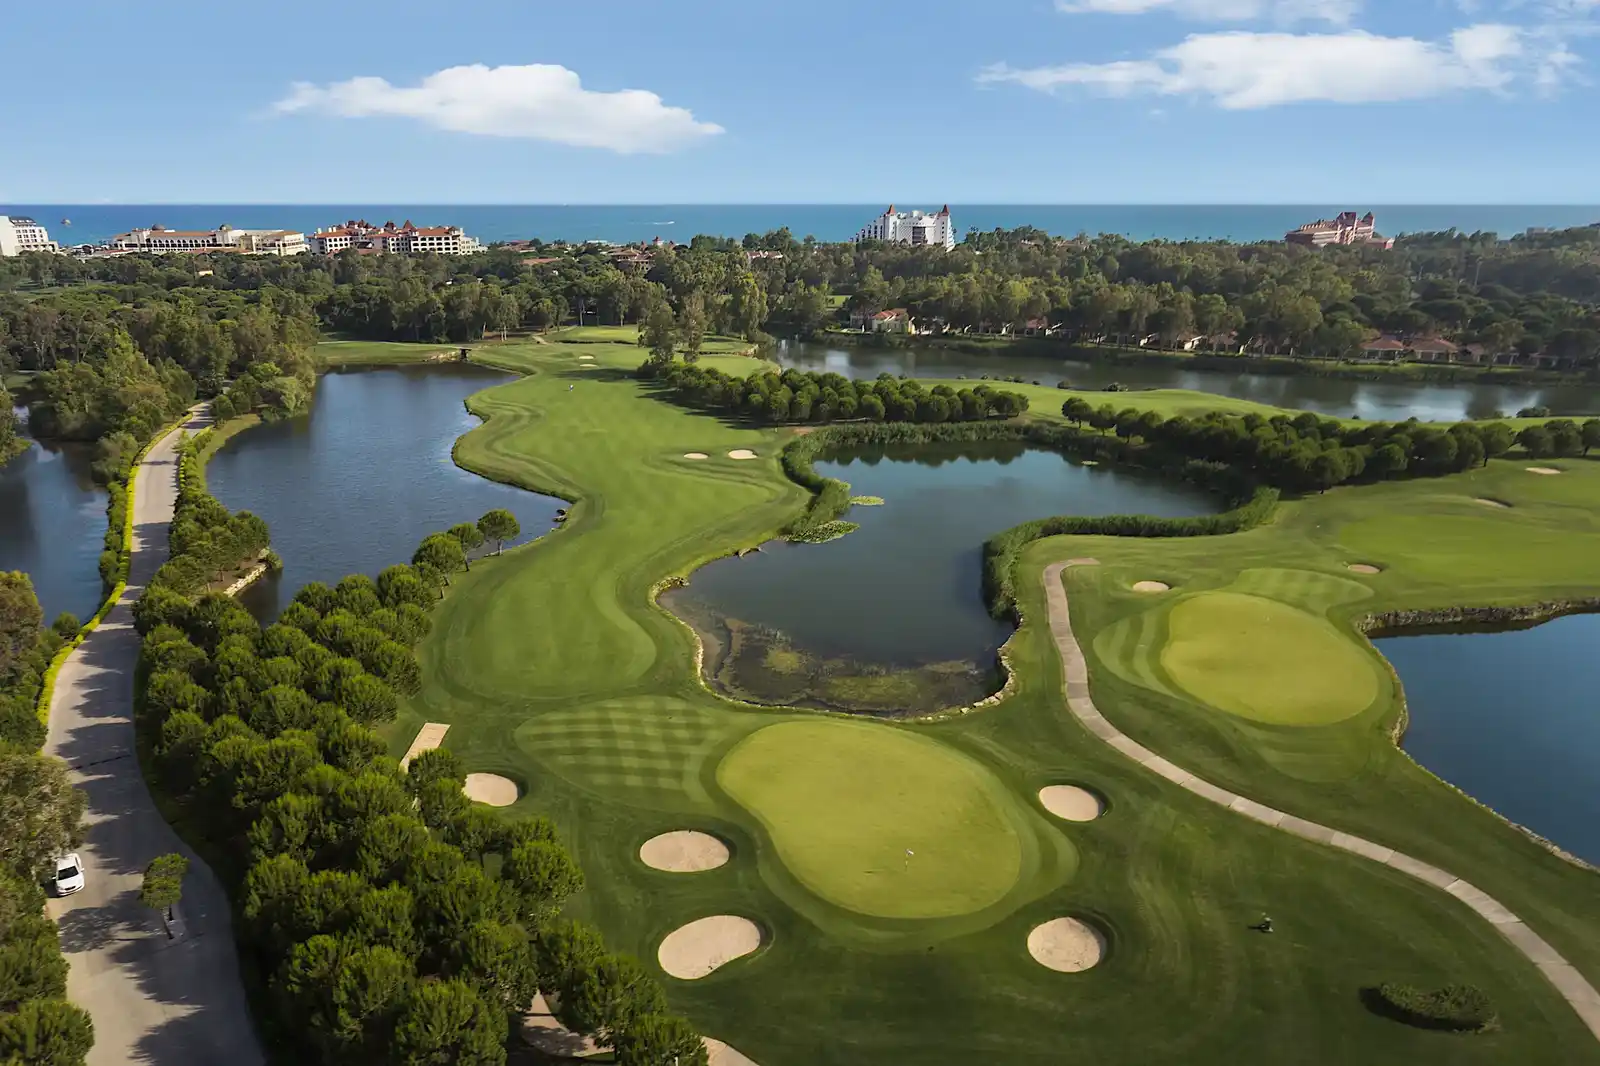 Antalya Golfklubb